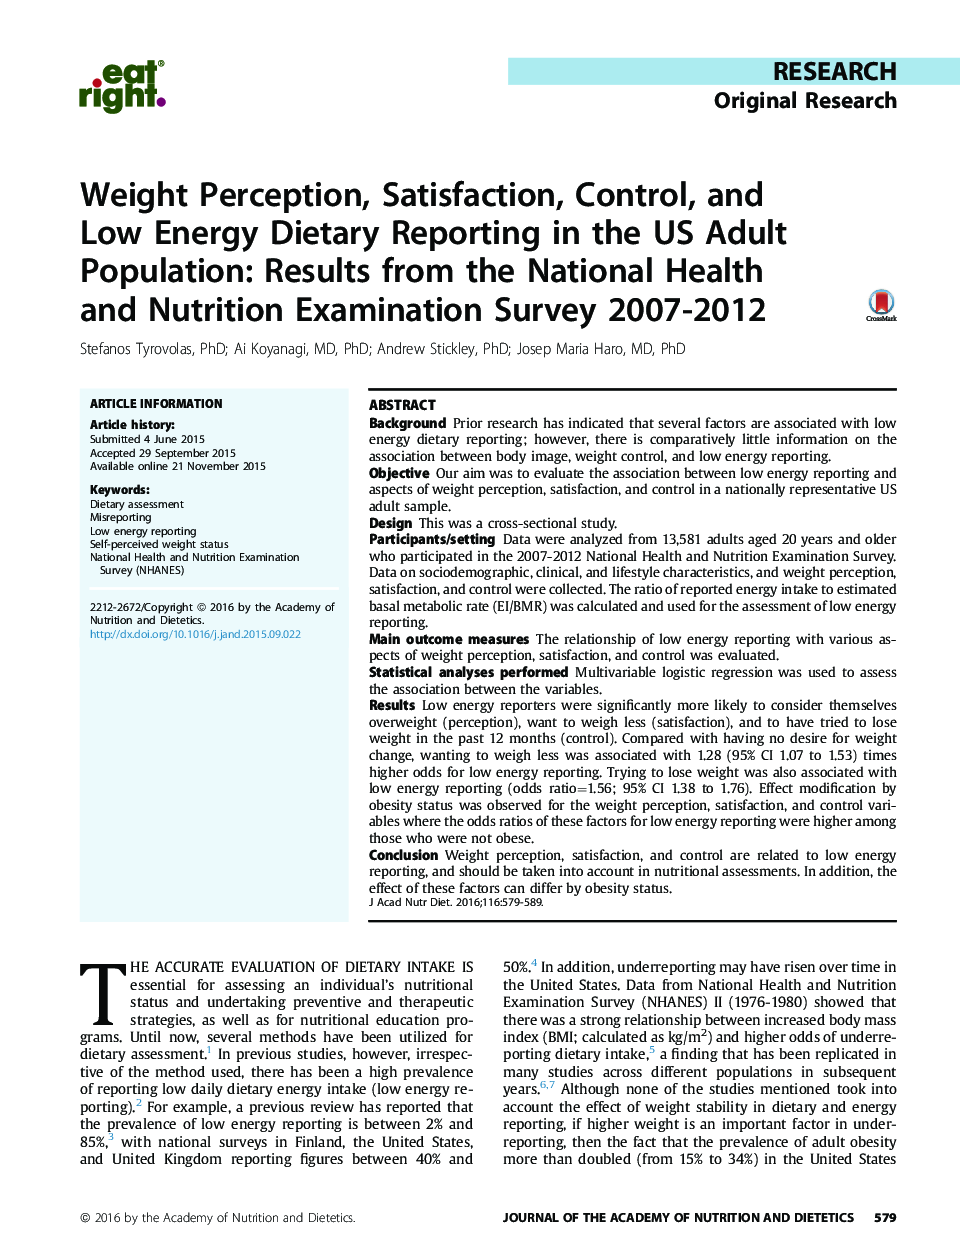 گزارشات تحقیقاتی در مورد تحقیقات معتبر، رضایت، کنترل و گزارش گیری کم انرژی در جمعیت بزرگسالان ایالات متحده: نتایج بررسی ملی بهداشت و تغذیه سال 2007-2012 